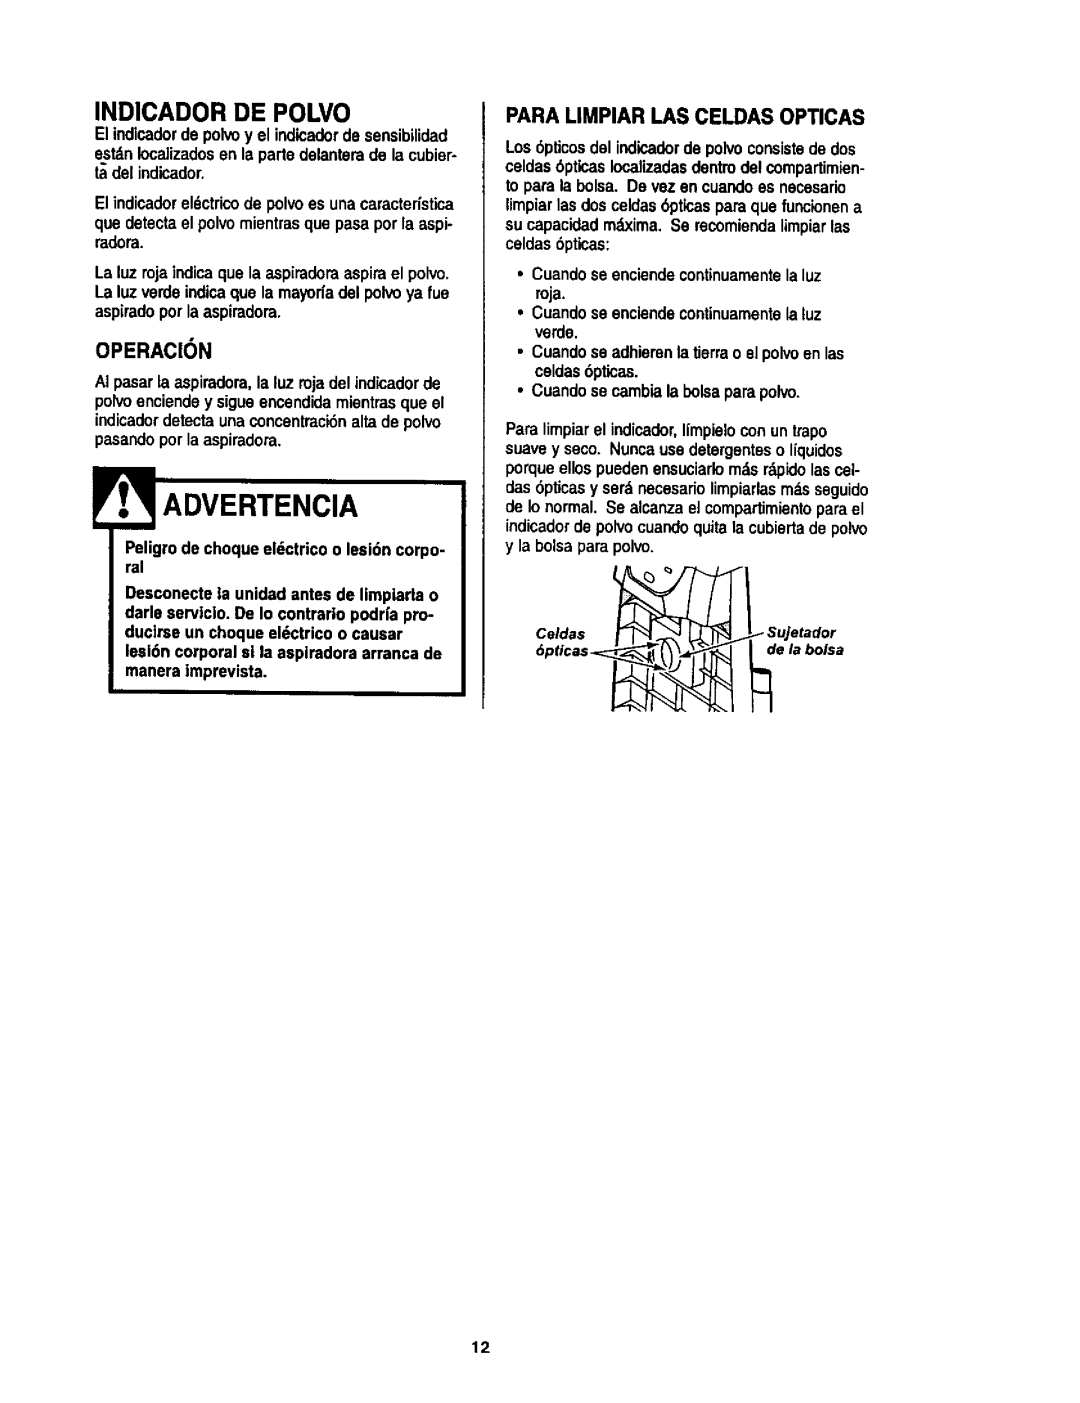 Kenmore 116.34925, 116.34924 owner manual Indicador De Polvo, roja, Operacion, Para Limpiar I.As Celdas Opticas, Advertencia 